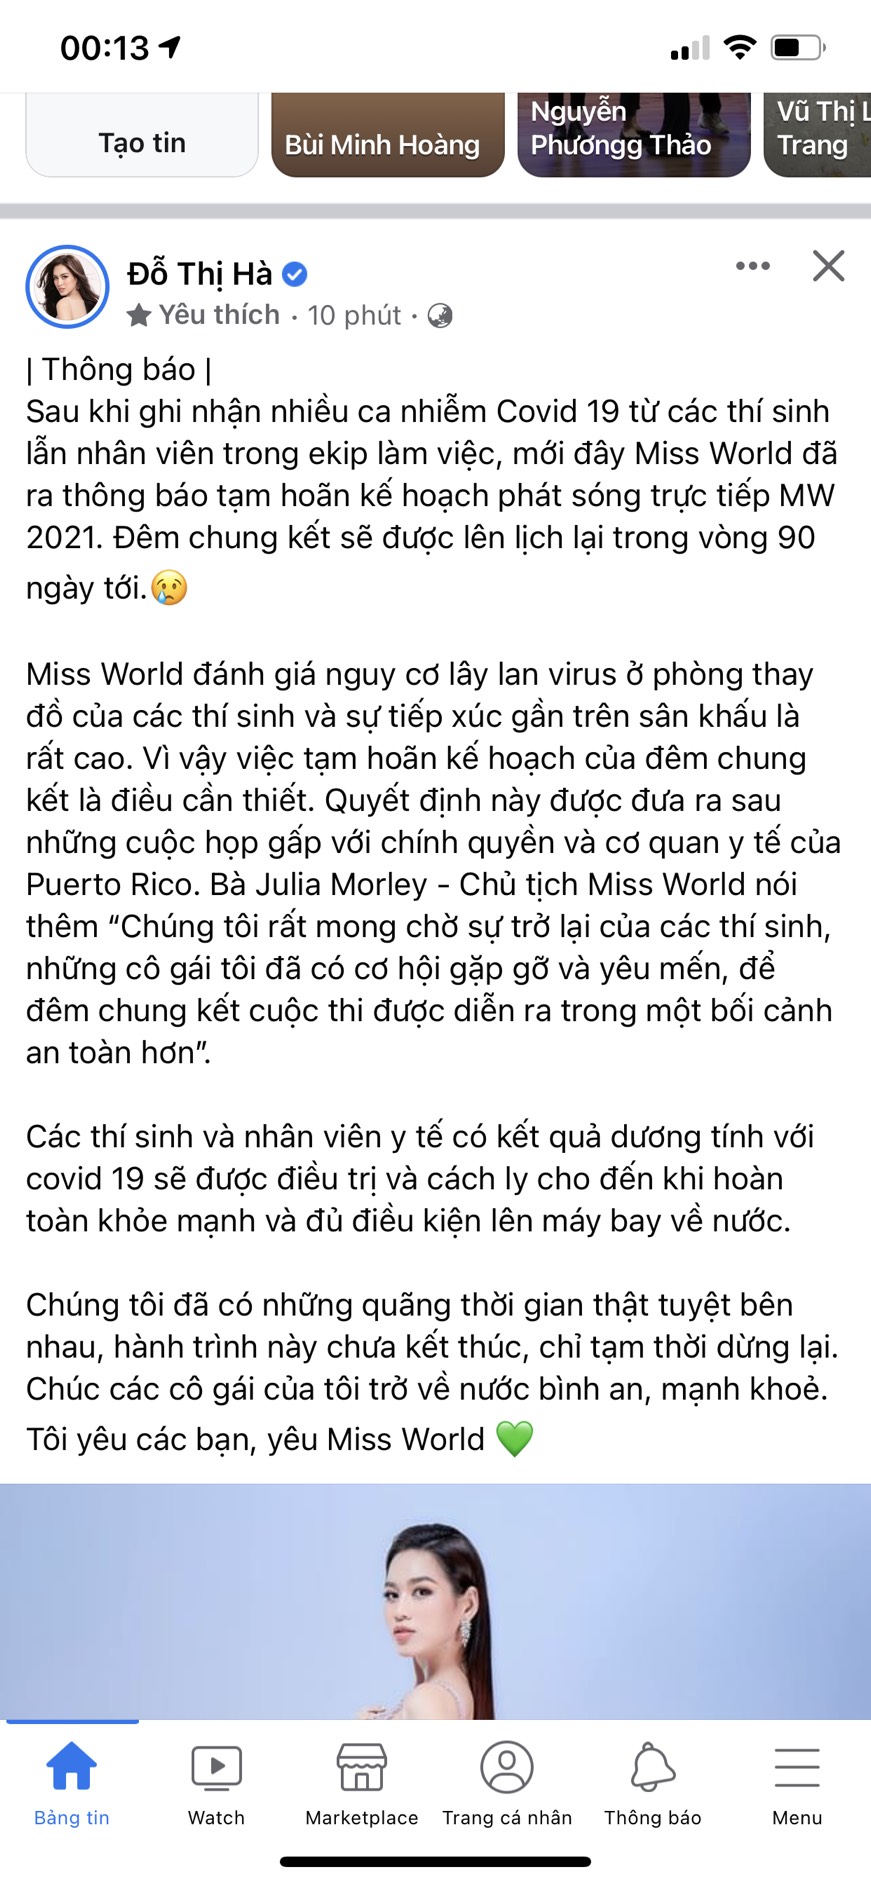 Ngay sau thông báo của ban tổ chức Miss World, Hoa hậu Đỗ Thị Hà cũng đăng tải bài viết trên trang cá nhân